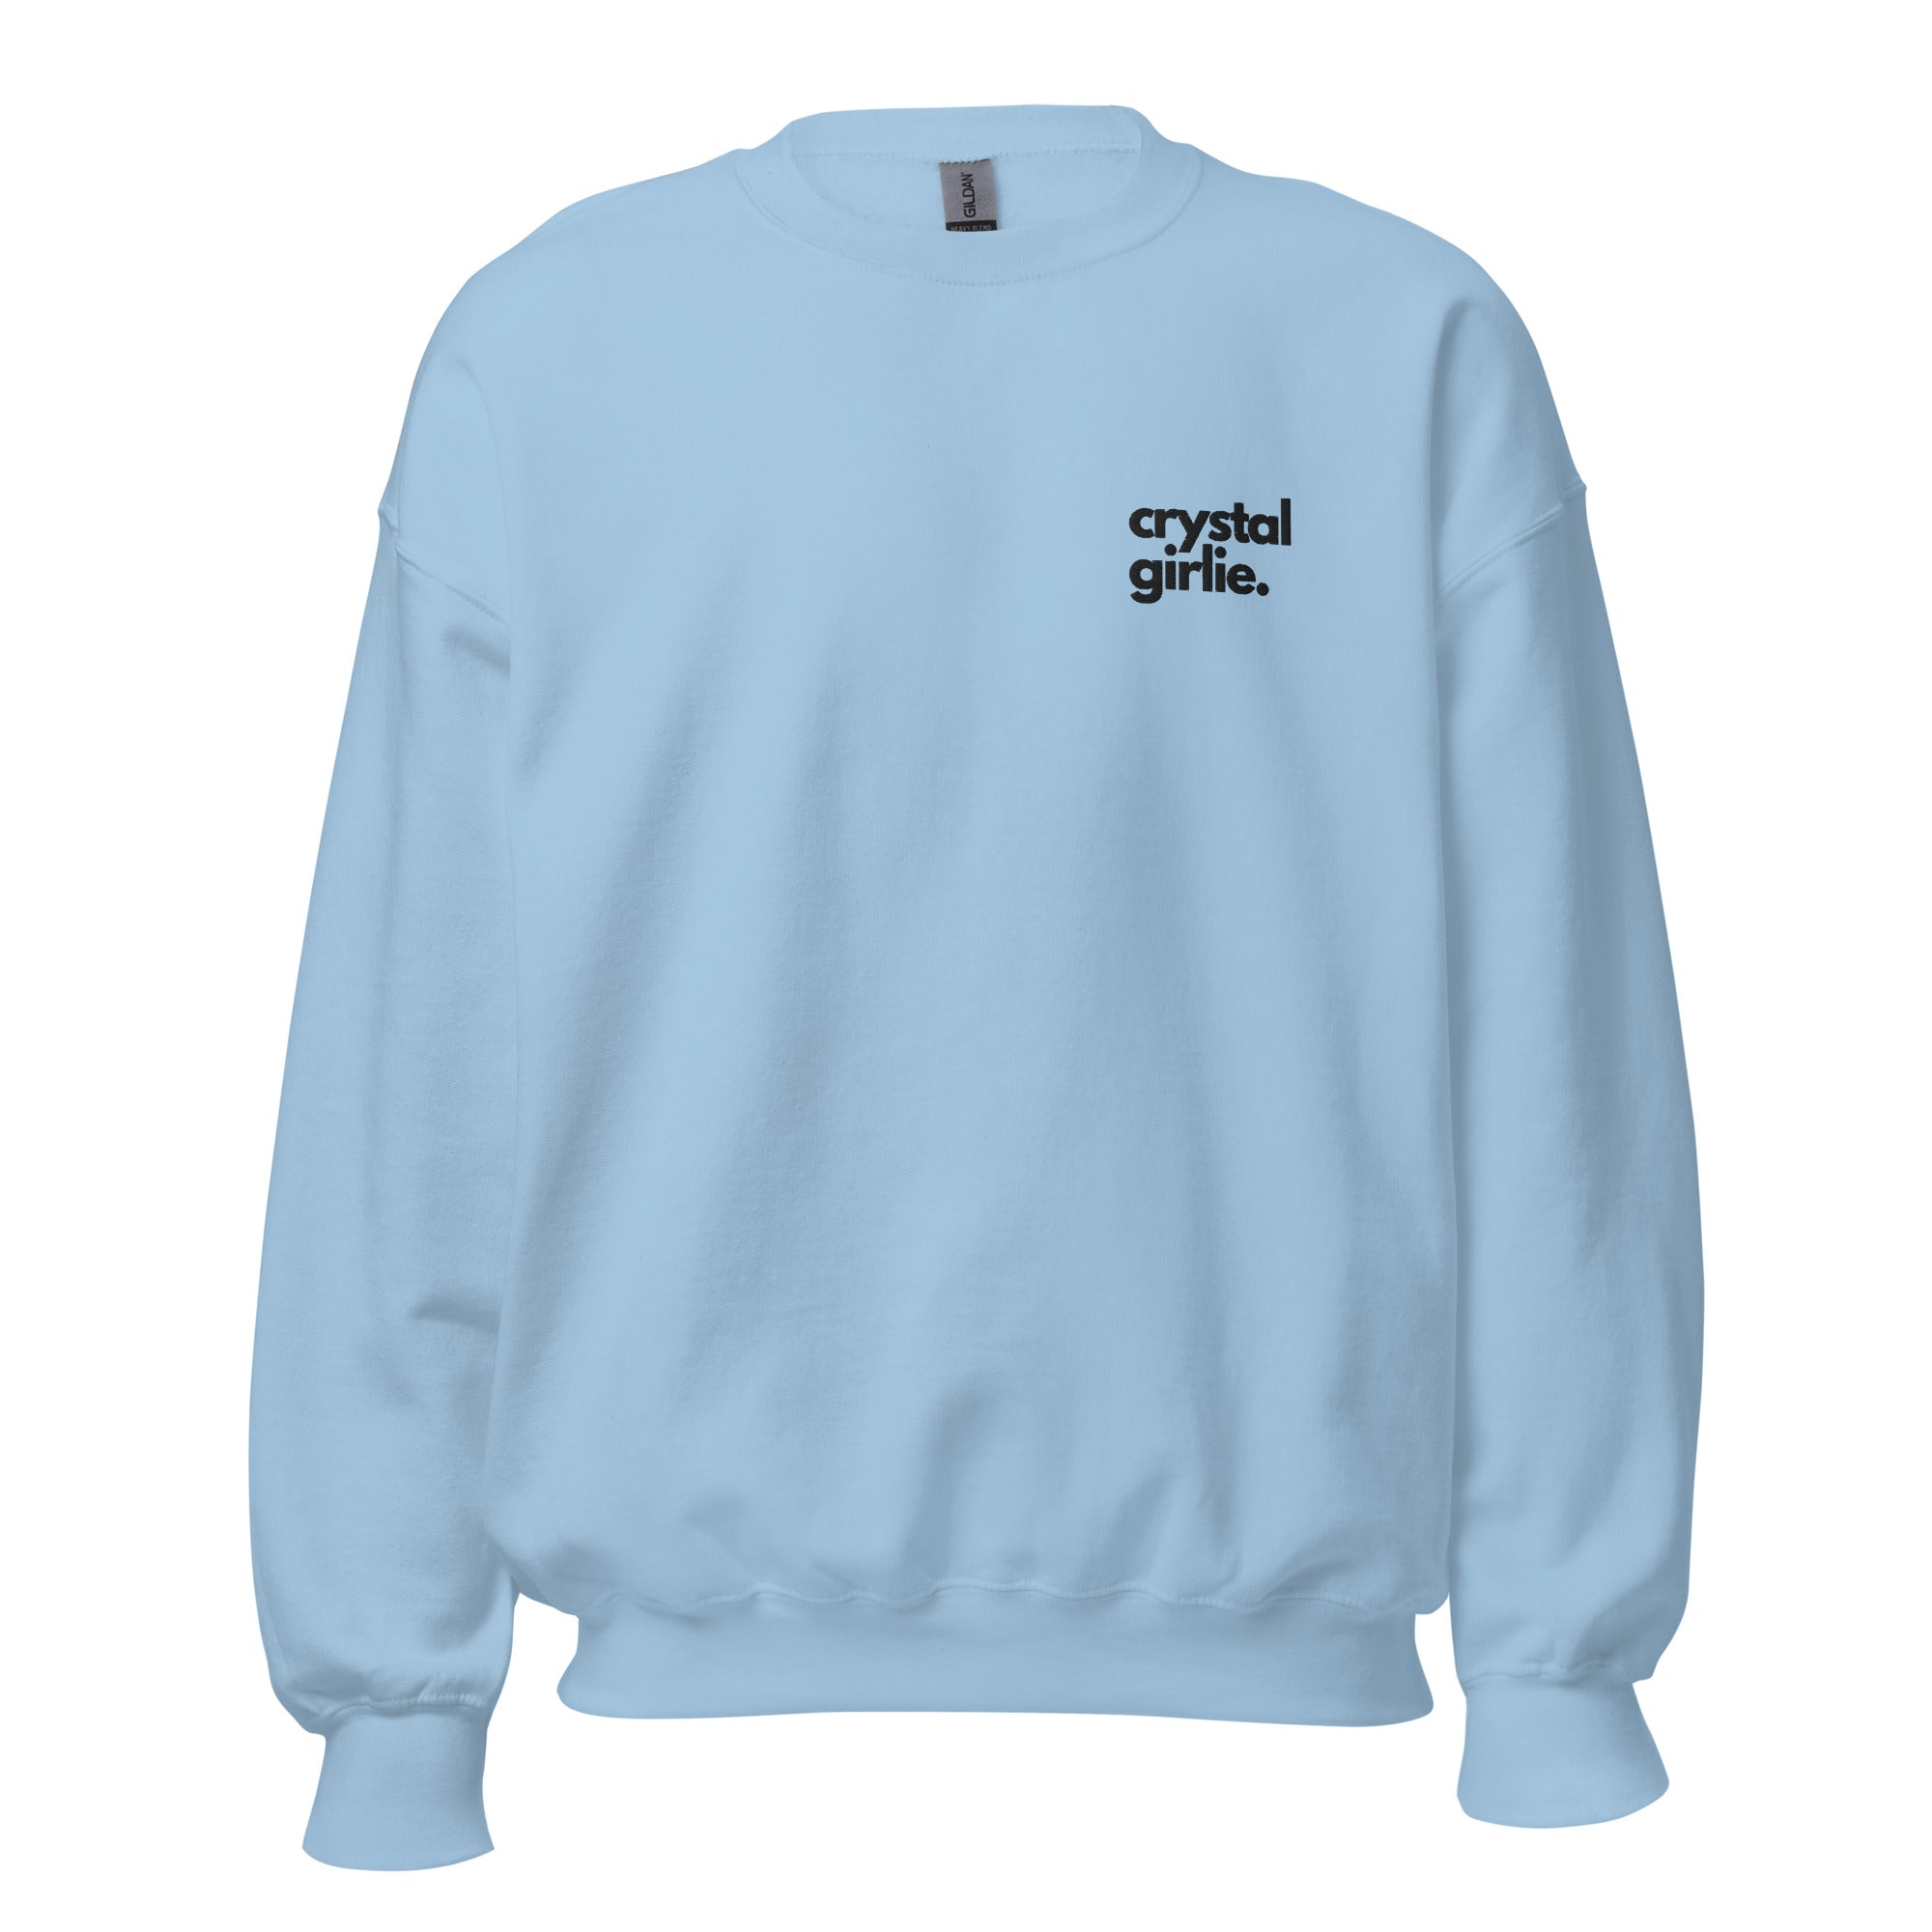 Crystal Girlie Sweatshirt (Black Embroidery)